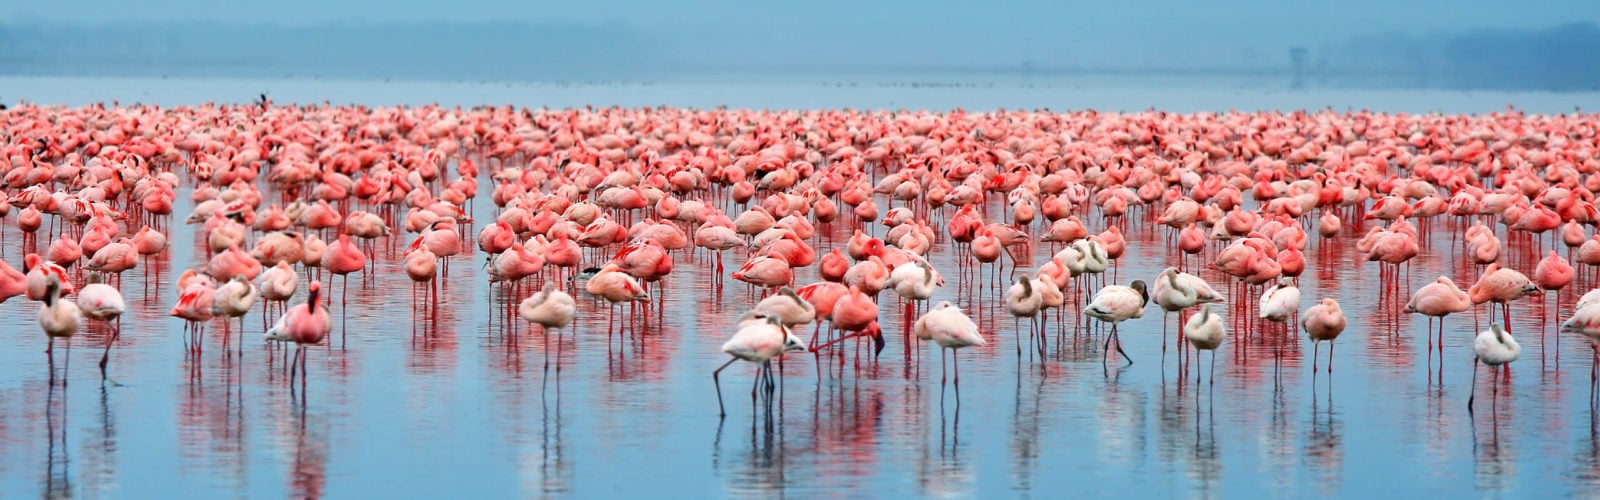 Flock of flamingos in Kenya's Lake Nakuru